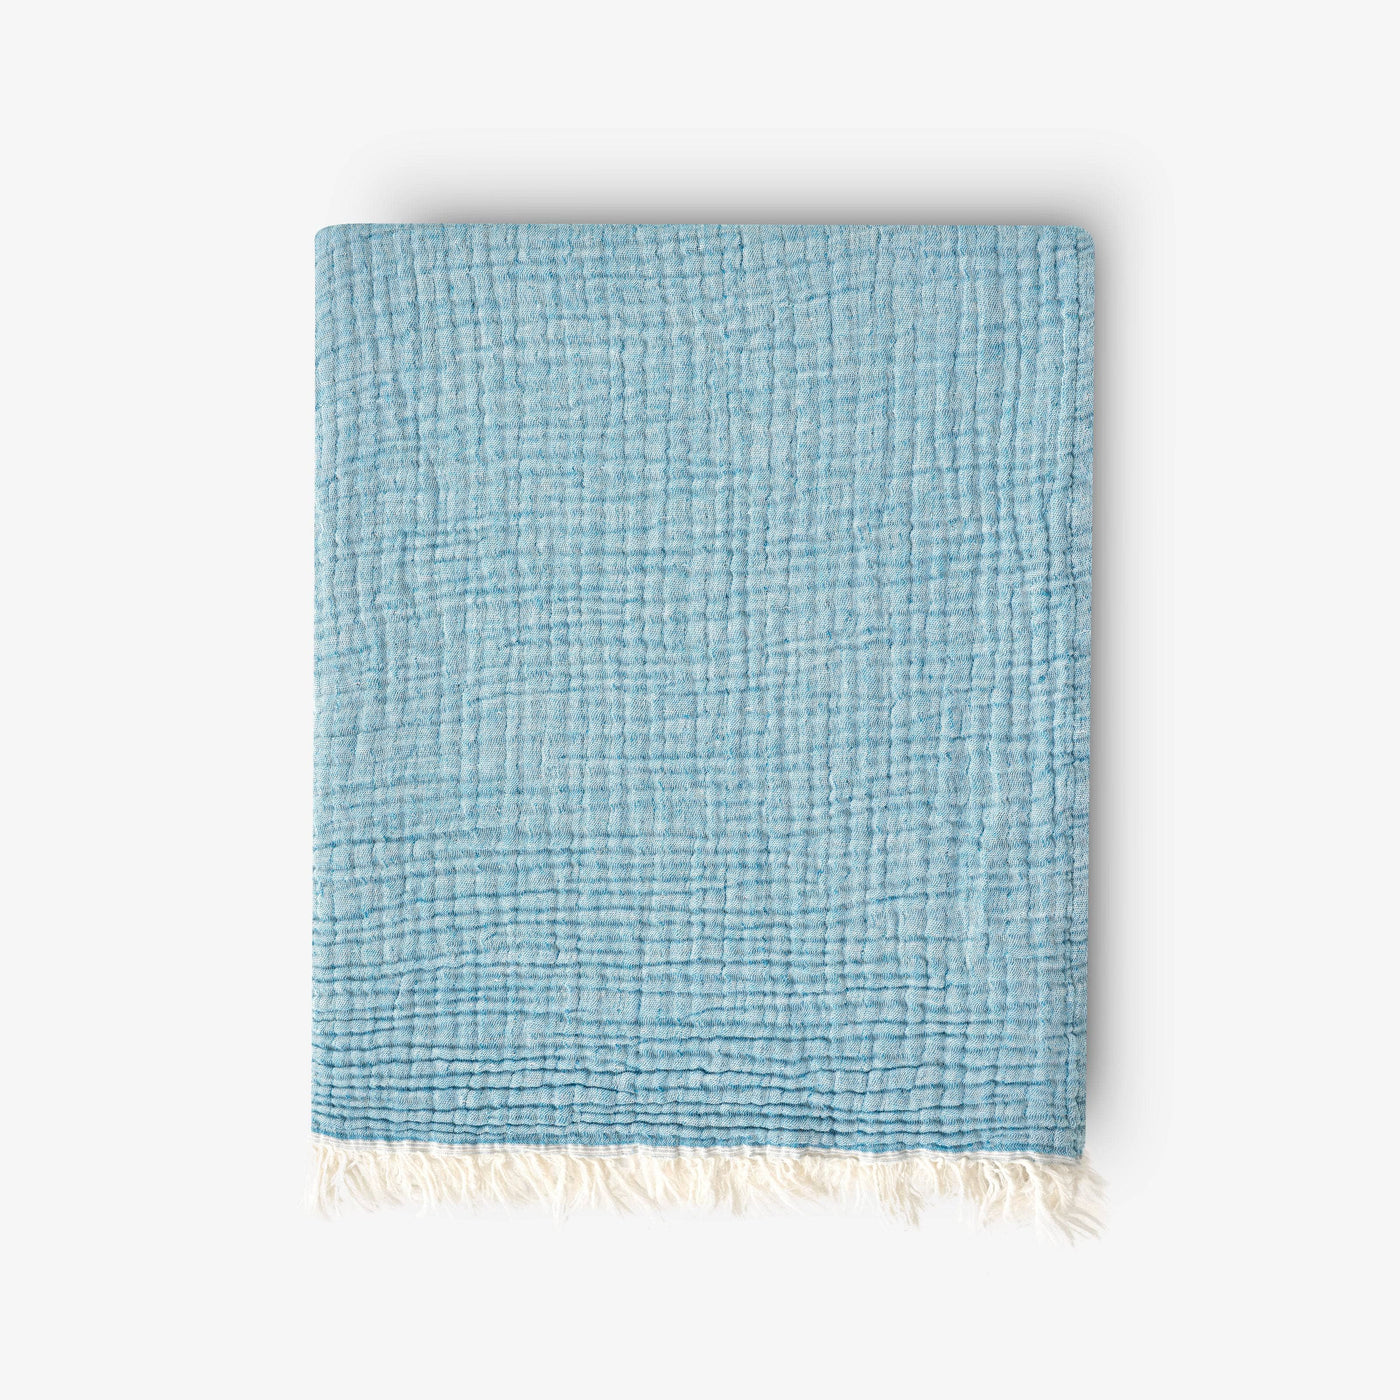 Ruth Textured 100% Cotton Throw Set, Blue, 150x200 cm Throws sazy.com